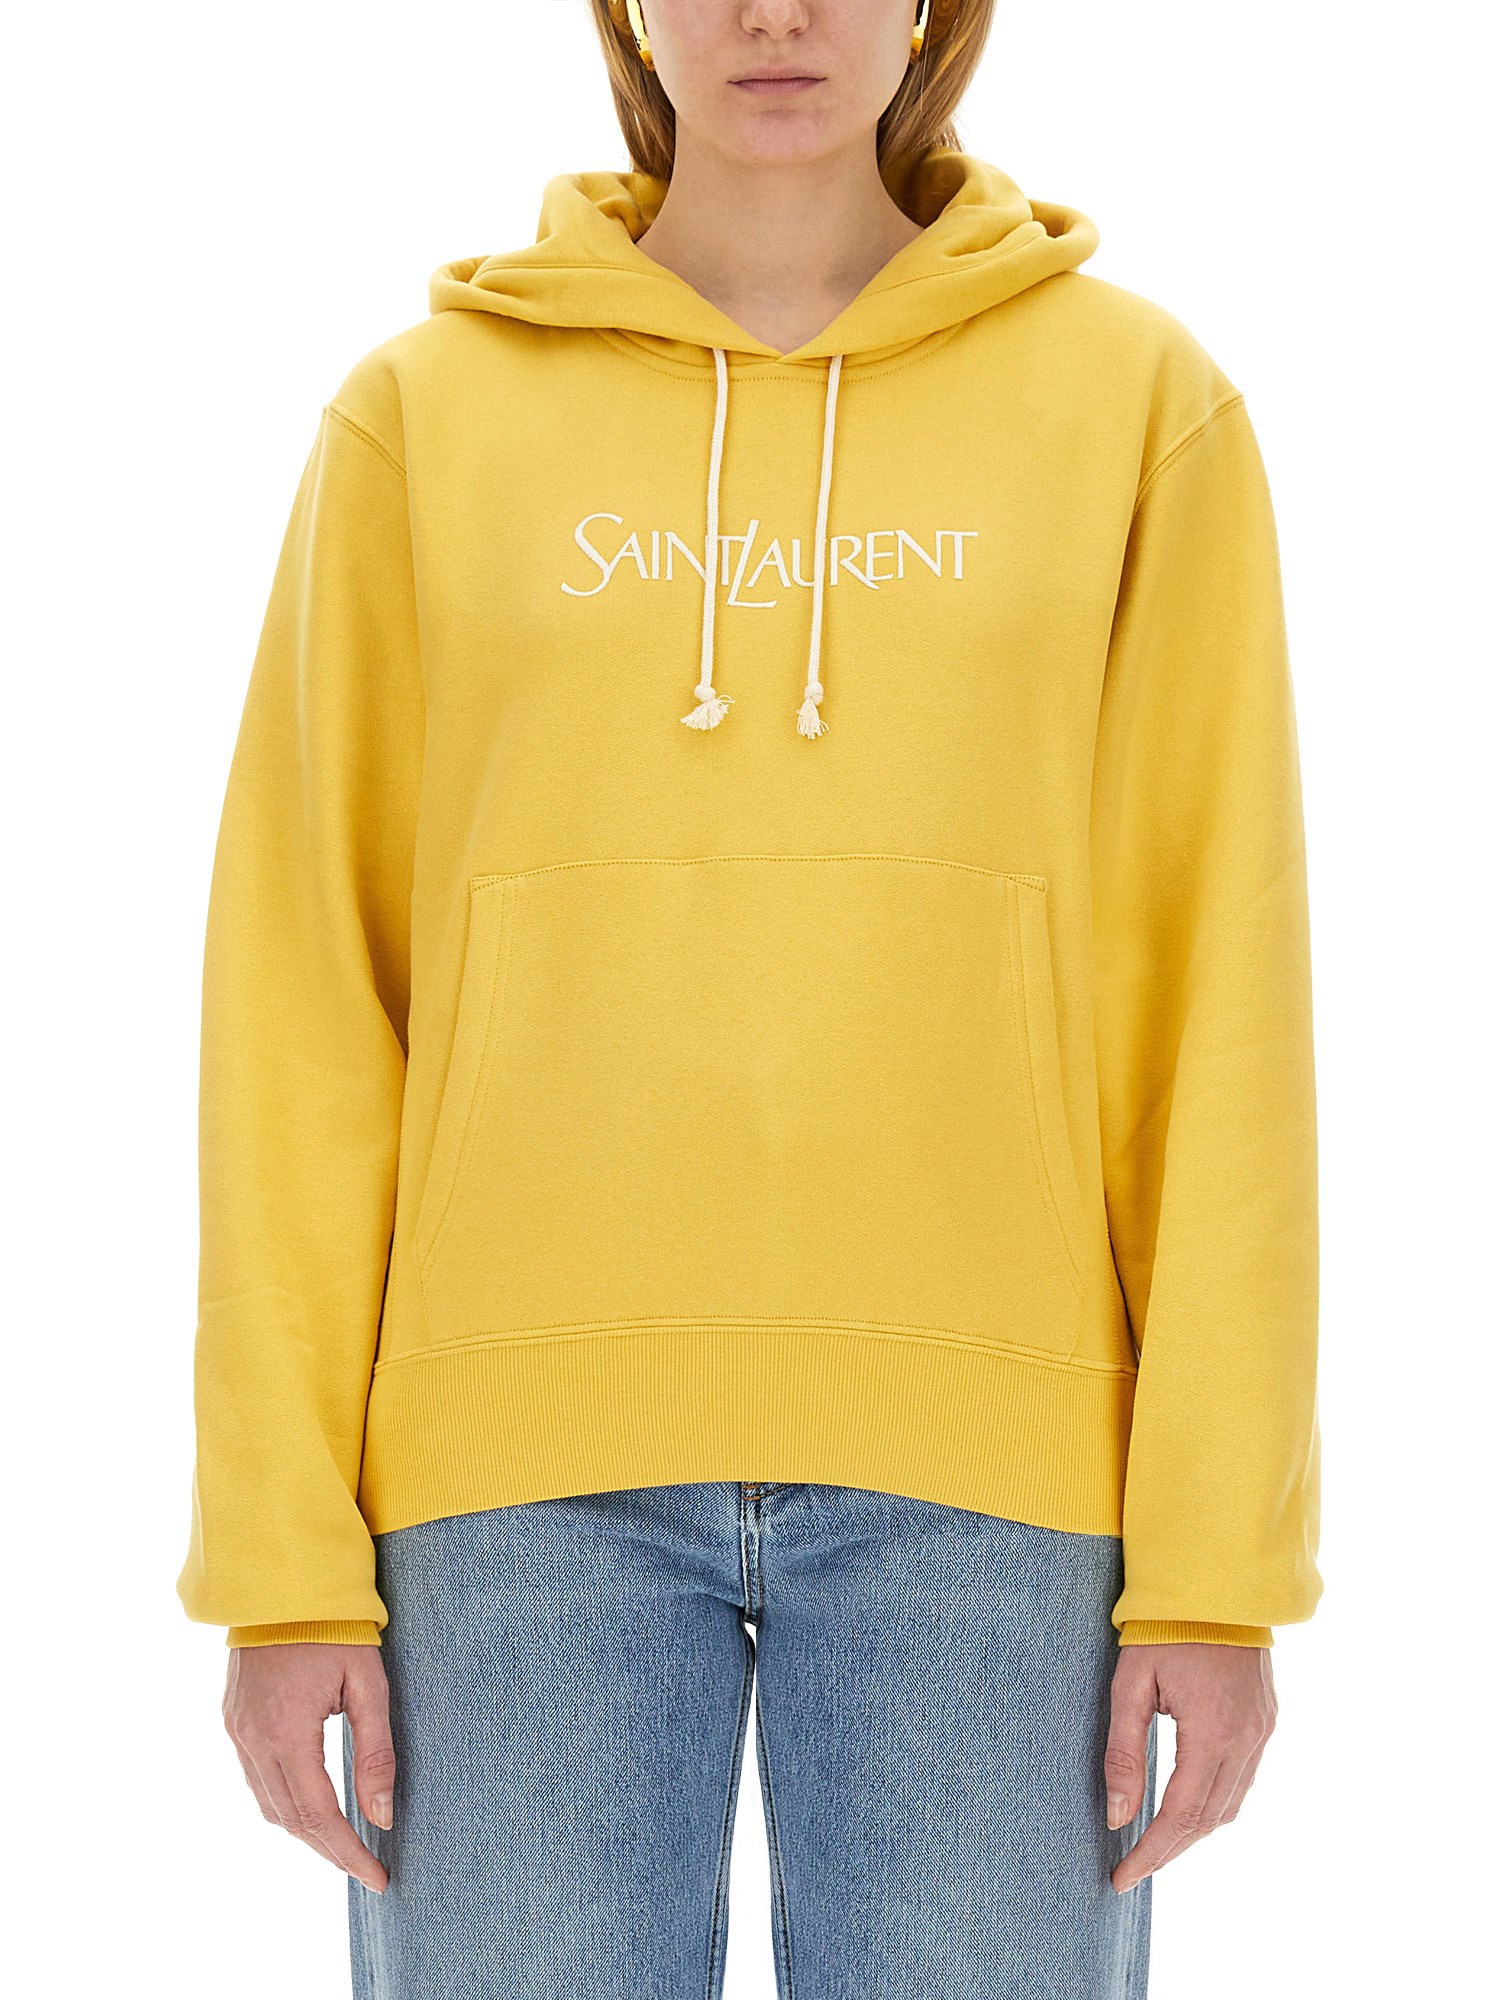 Saint Laurent Sweatshirt With Logo In Yellow